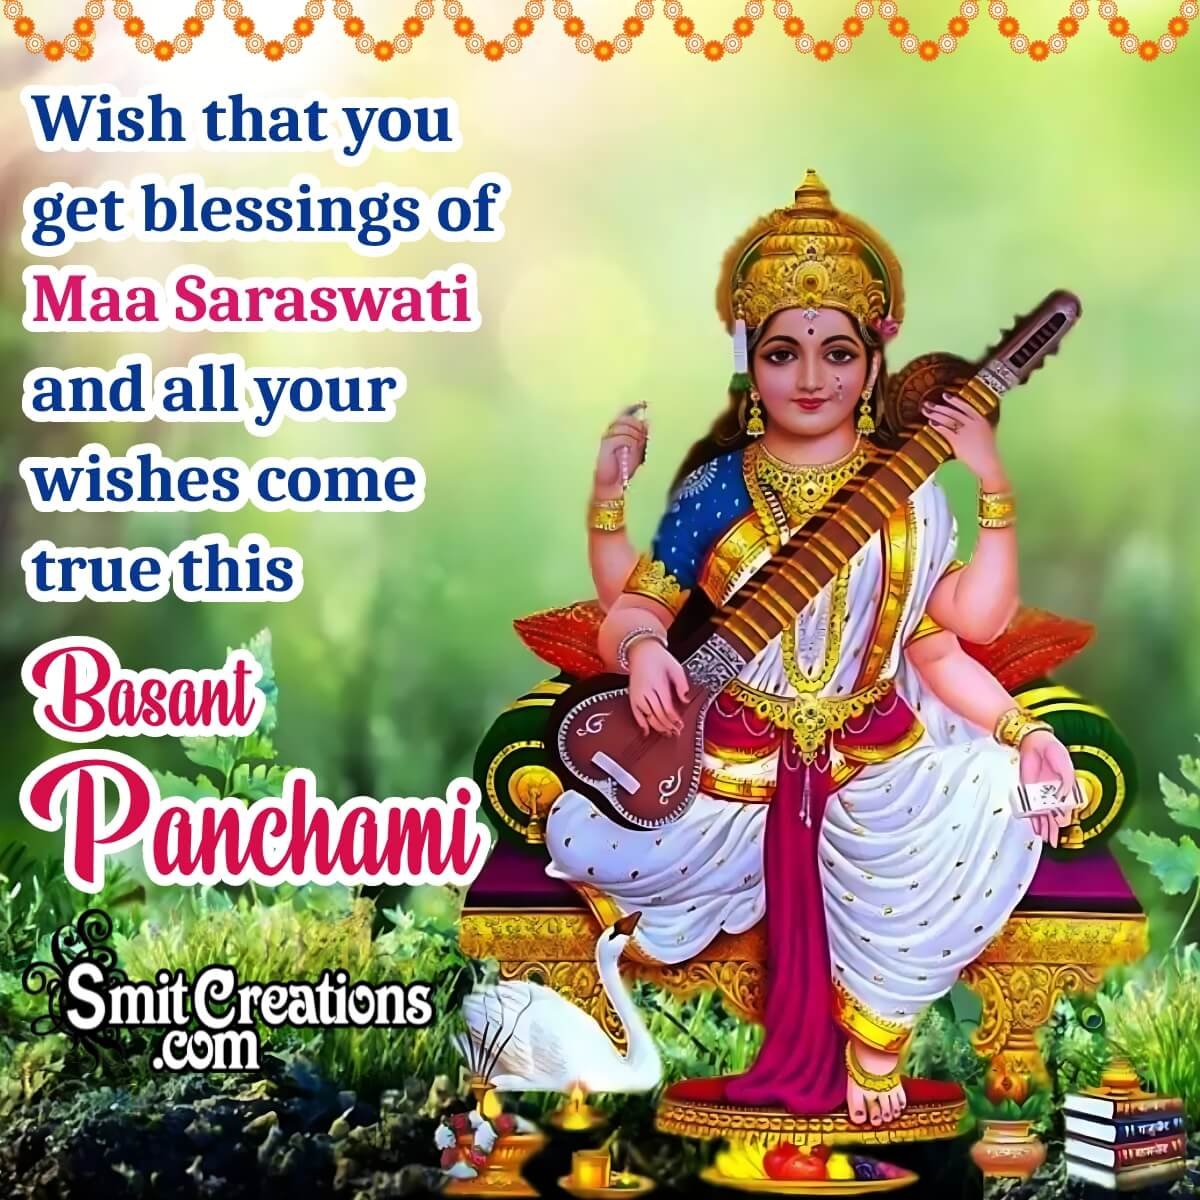 Basant Panchami Blessings